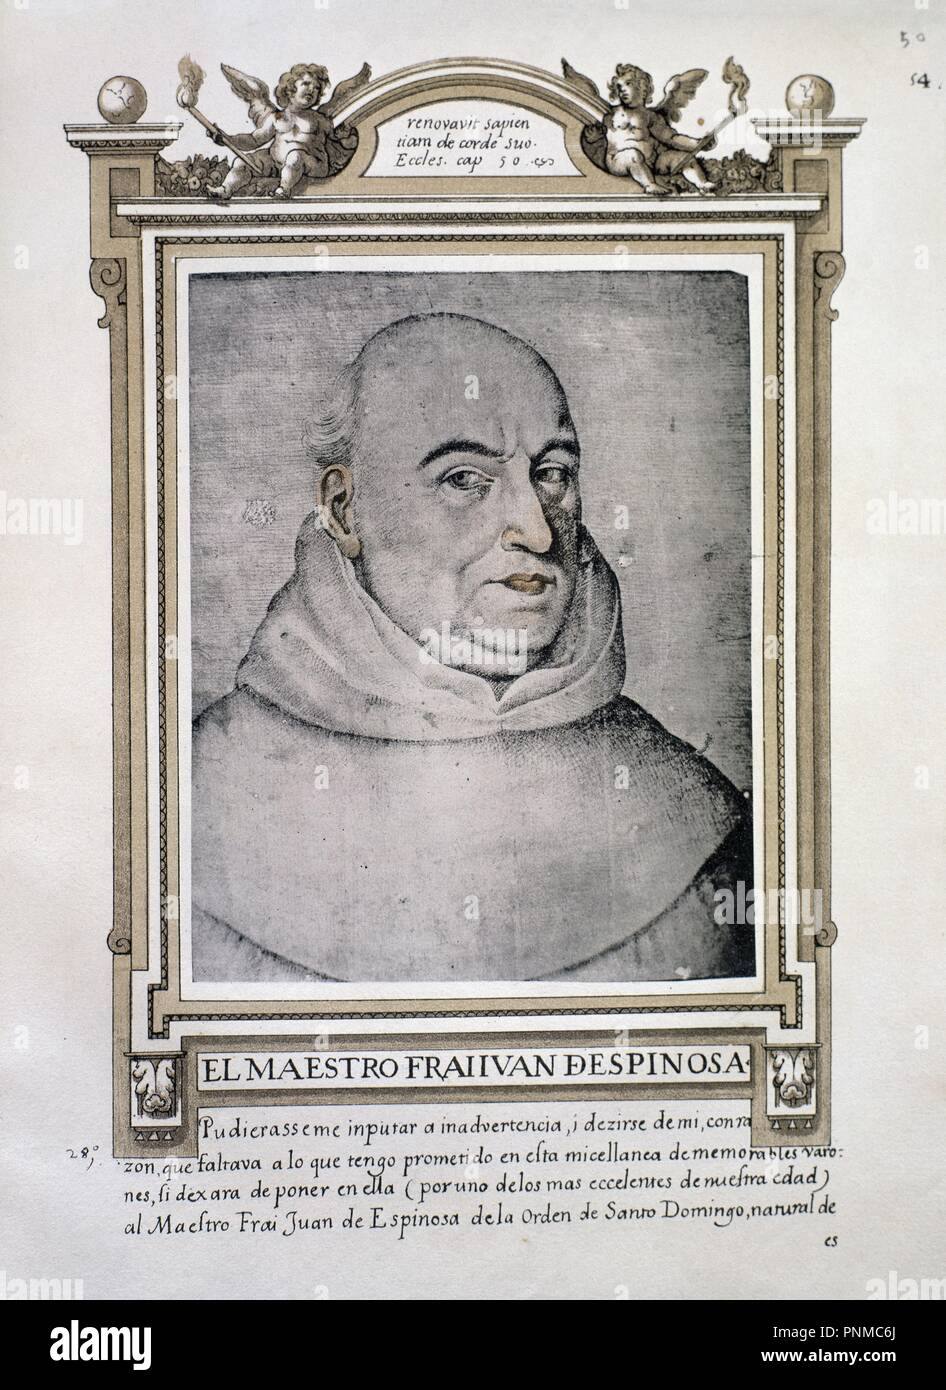 FRAY JUAN DE ESPINOSA - LIBRO DE RETRATOS DE ILUSTRES Y MEMORABLES VARONES - 1599. Author: PACHECO, FRANCISCO. Location: BIBLIOTECA NACIONAL-COLECCION. MADRID. SPAIN. Stock Photo